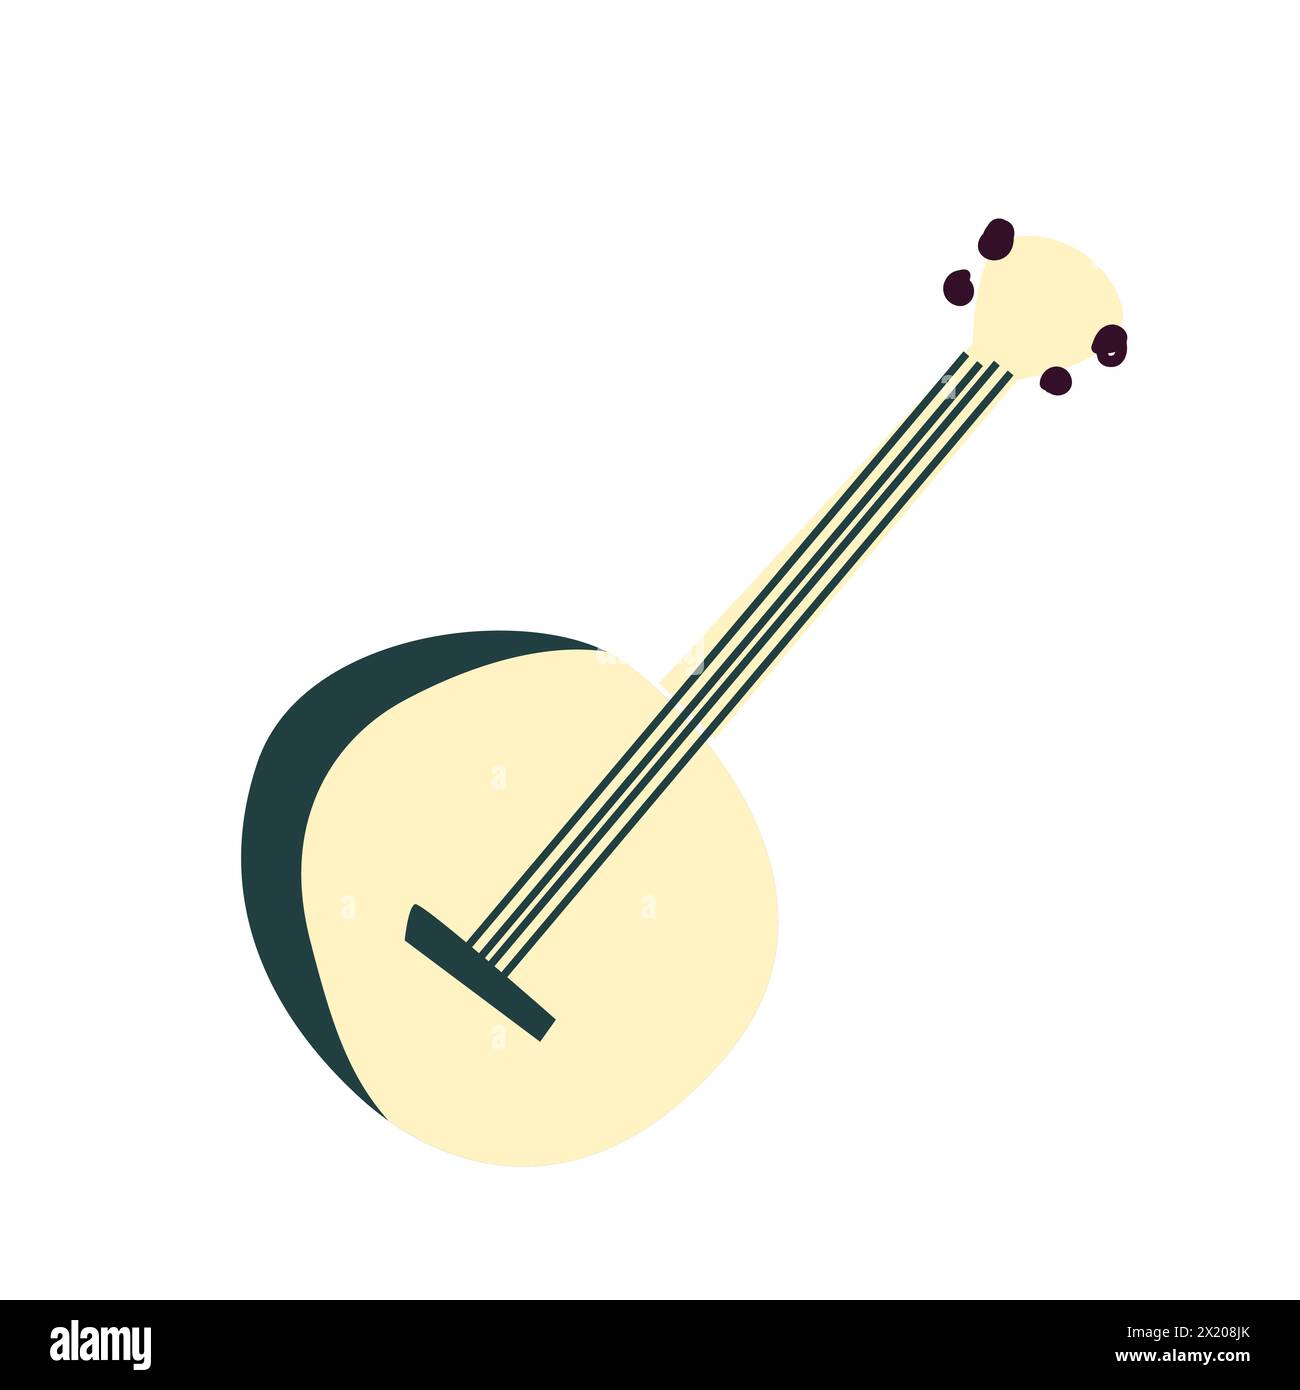 Banjo, banjo en bois acoustique à cordes avec touche. Instrument de musique afro-américain. Illustration vectorielle de bande dessinée plate colorée isolée sur BA blanc Illustration de Vecteur